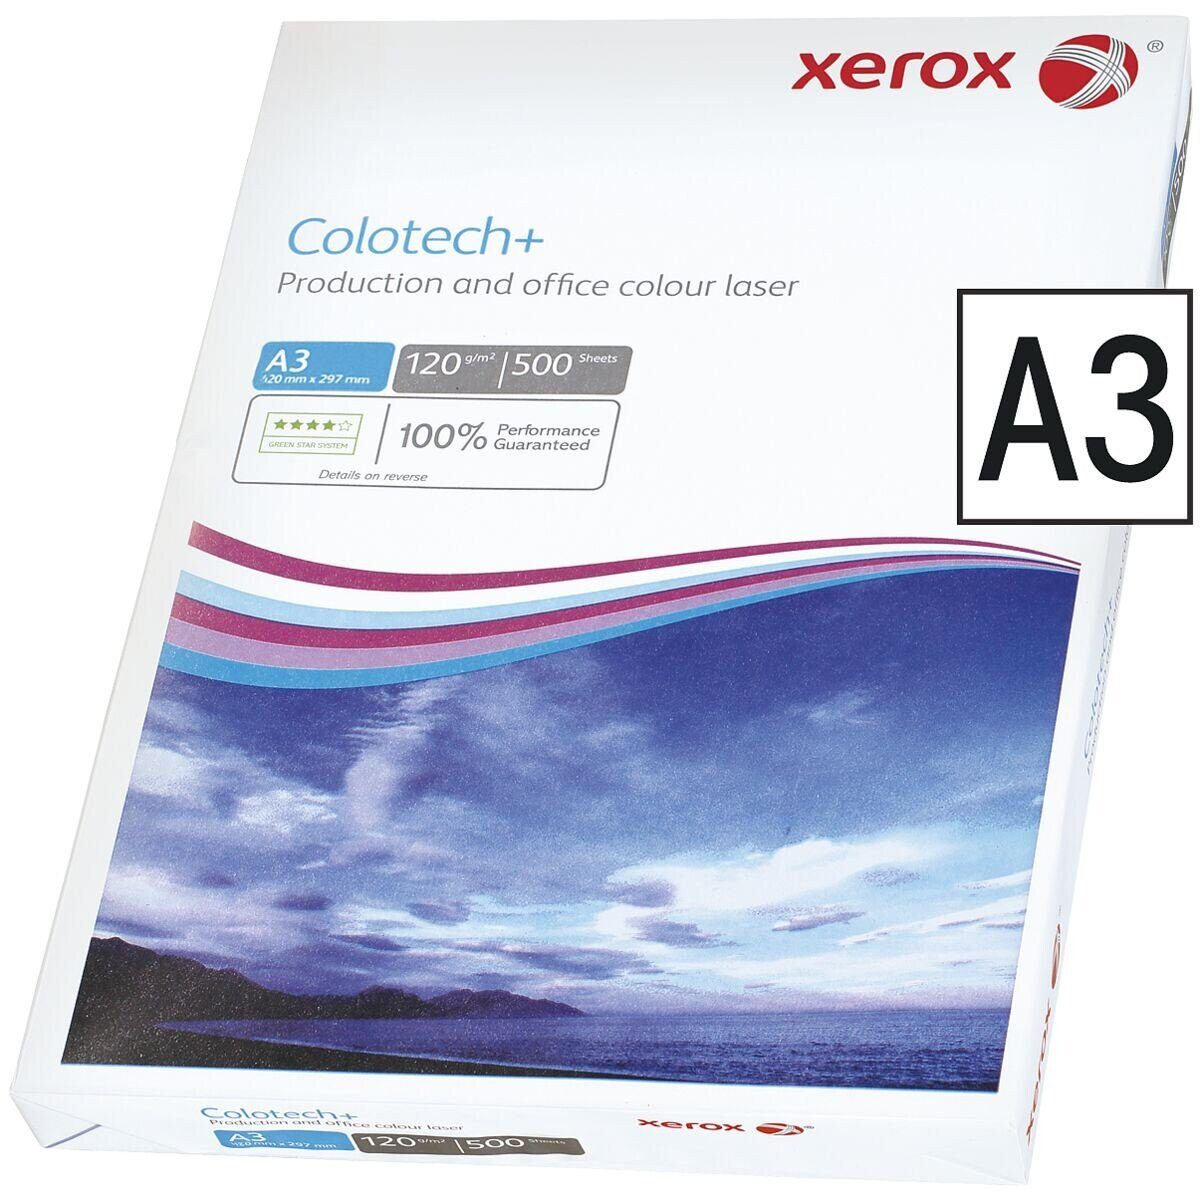 Xerox Farblaser-Druckerpapier Colotech+, Format DIN A3, 120 g/m², 500 Blatt